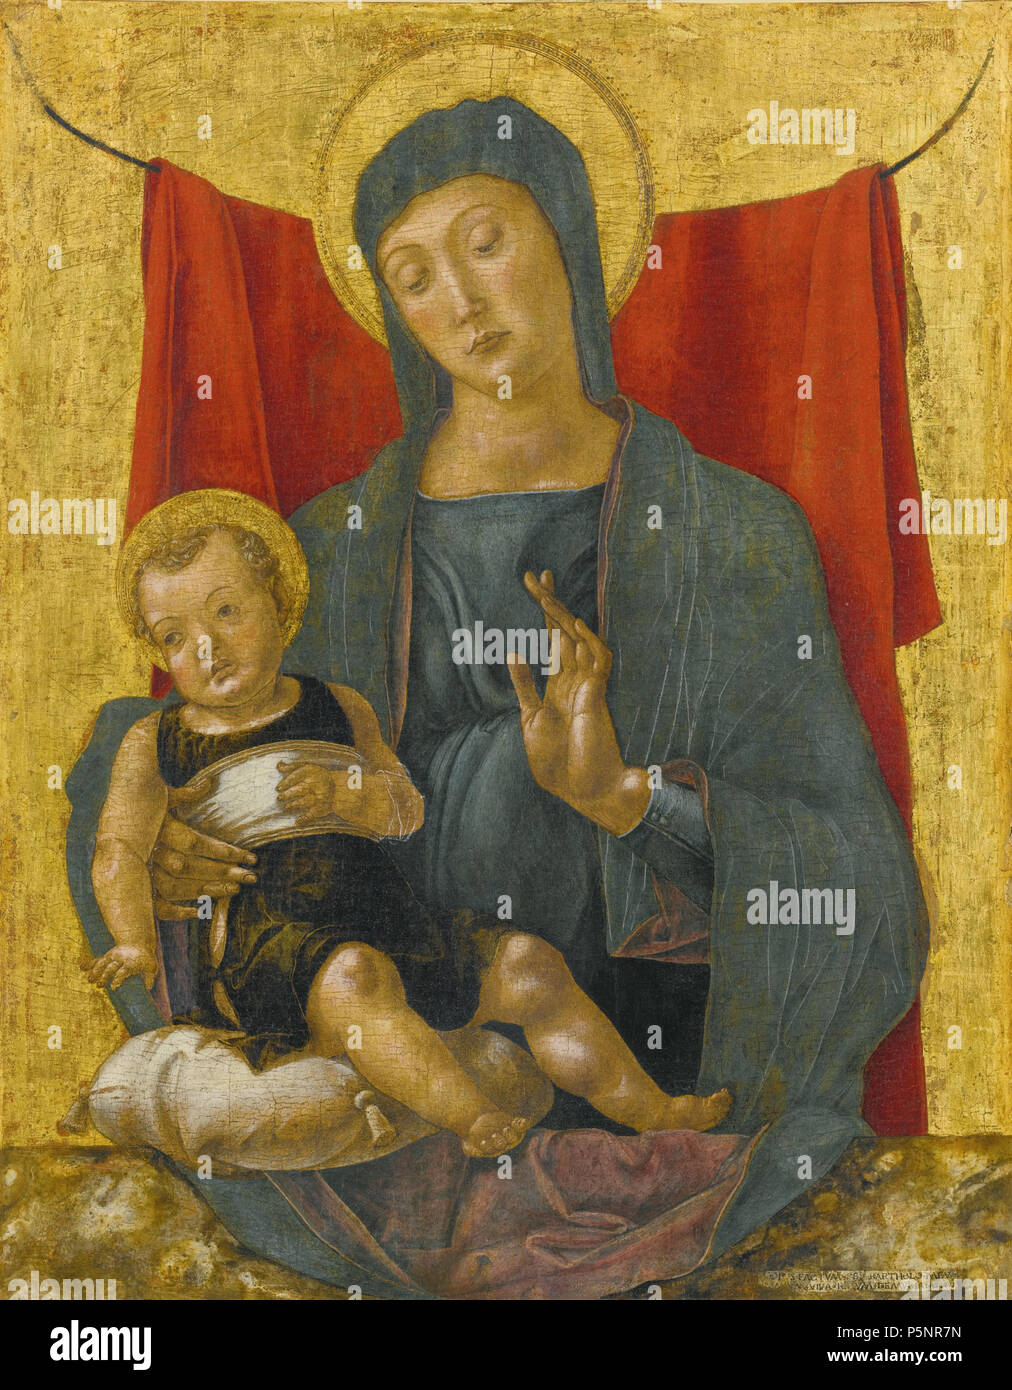 N/A. Englisch: Bartolomeo Vivarini (AKTIV IN VENEDIG 1450-1491), die Madonna und Kind vor einem roten Vorhang, signiert und auf der cartellino rechts unten vom: OPV · FACTVM · PRO · BARTHOLOMEV [M]/M [ ] M · VIVA · RI [N] VM · DEMVRIANO 1472, Tempera auf Holz, auf Leinwand übertragen, die auf dem Panel, Gold, 83,2 bis 65,4 cm. 20 Januar 2013, 09:42:05. Bartolomeo Vivarini (C. 1432 - C. 1499) 174 BARTOLOMEO VIVARINI AKTIV IN VENEDIG 1450-1491 DER MADONNA UND KIND VOR EINEM ROTEN VORHANG Stockfoto